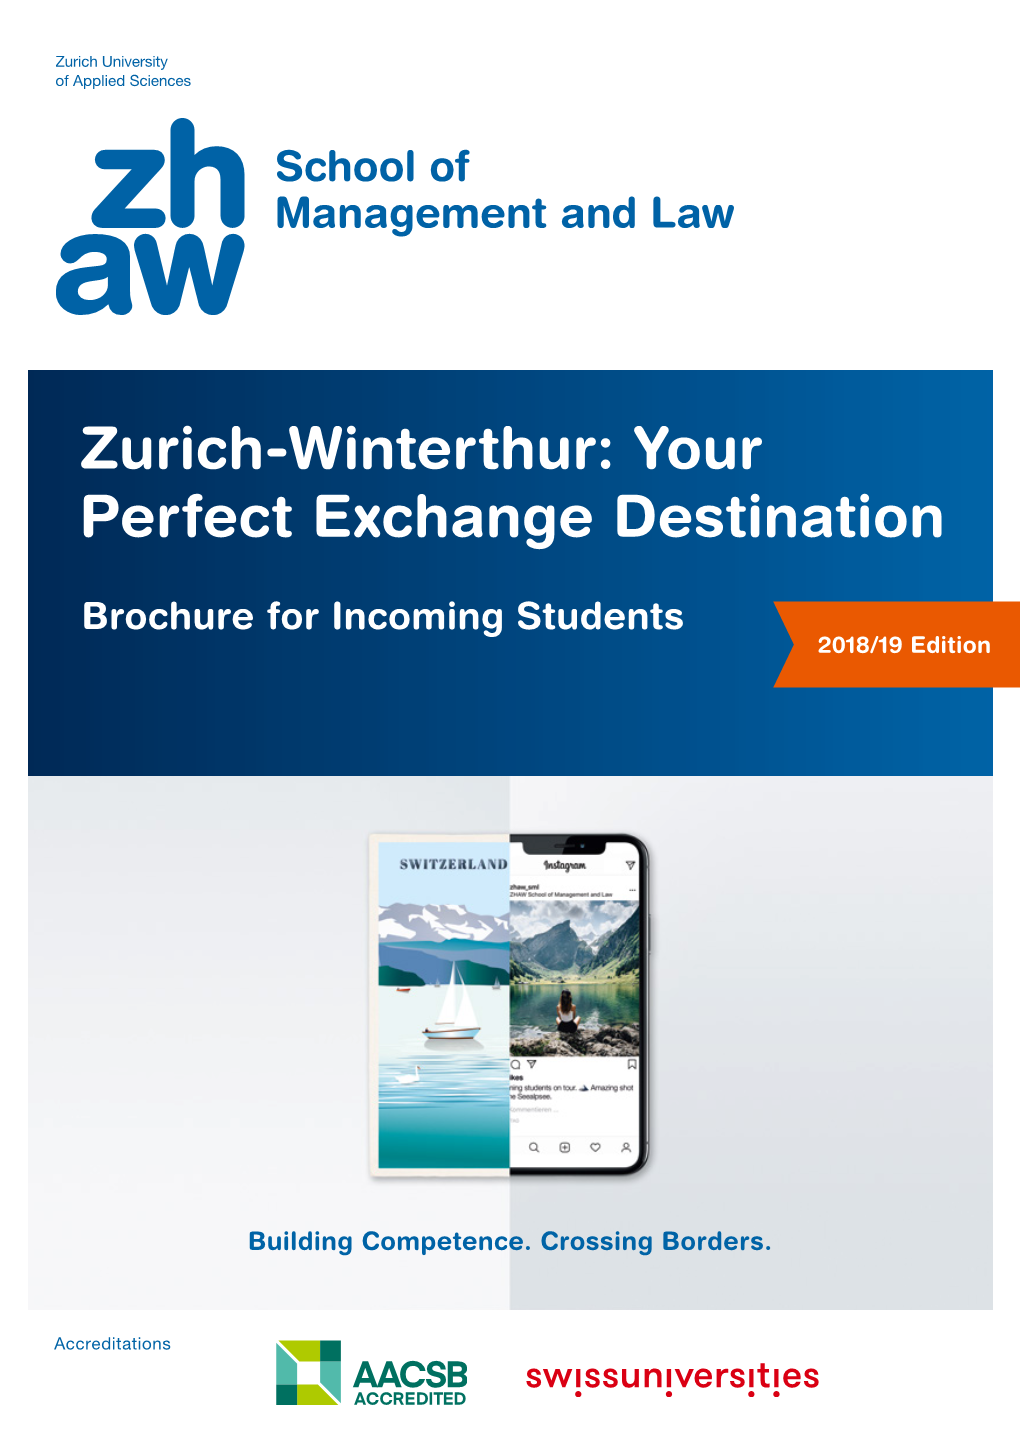 Zurich-Winterthur: Your Perfect Exchange Destination